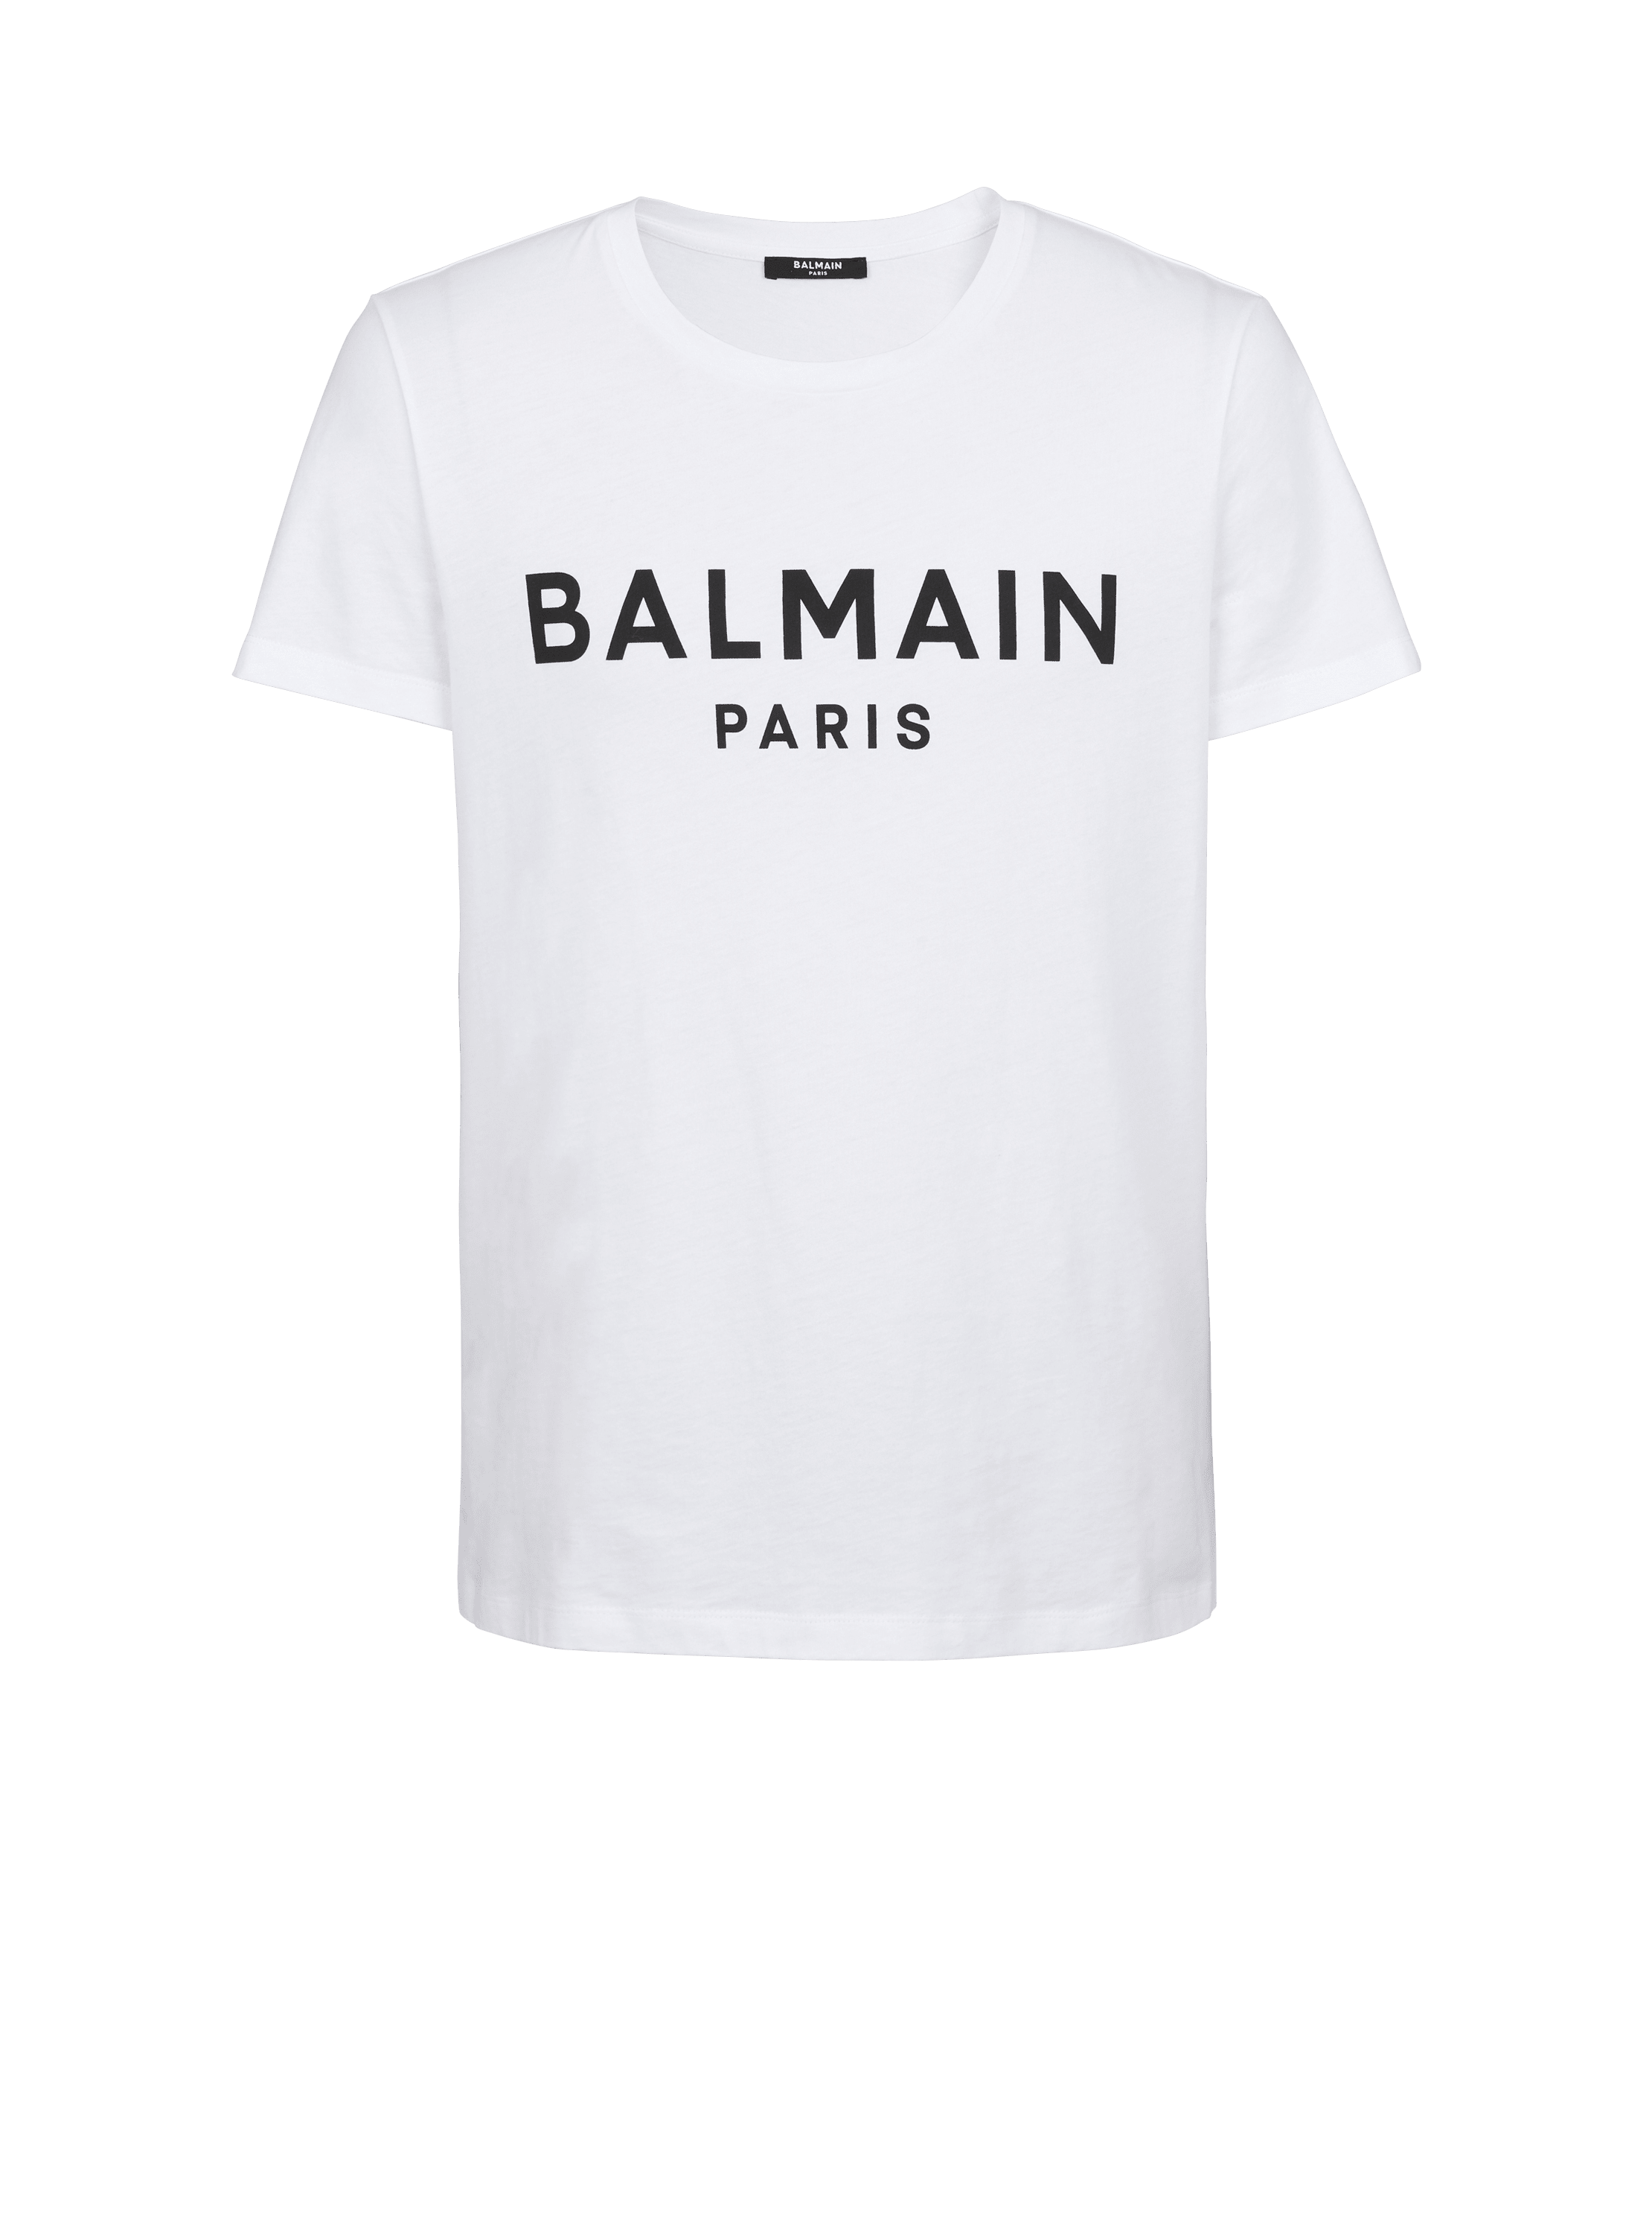 Balmain Paris T-shirt - Men | BALMAIN